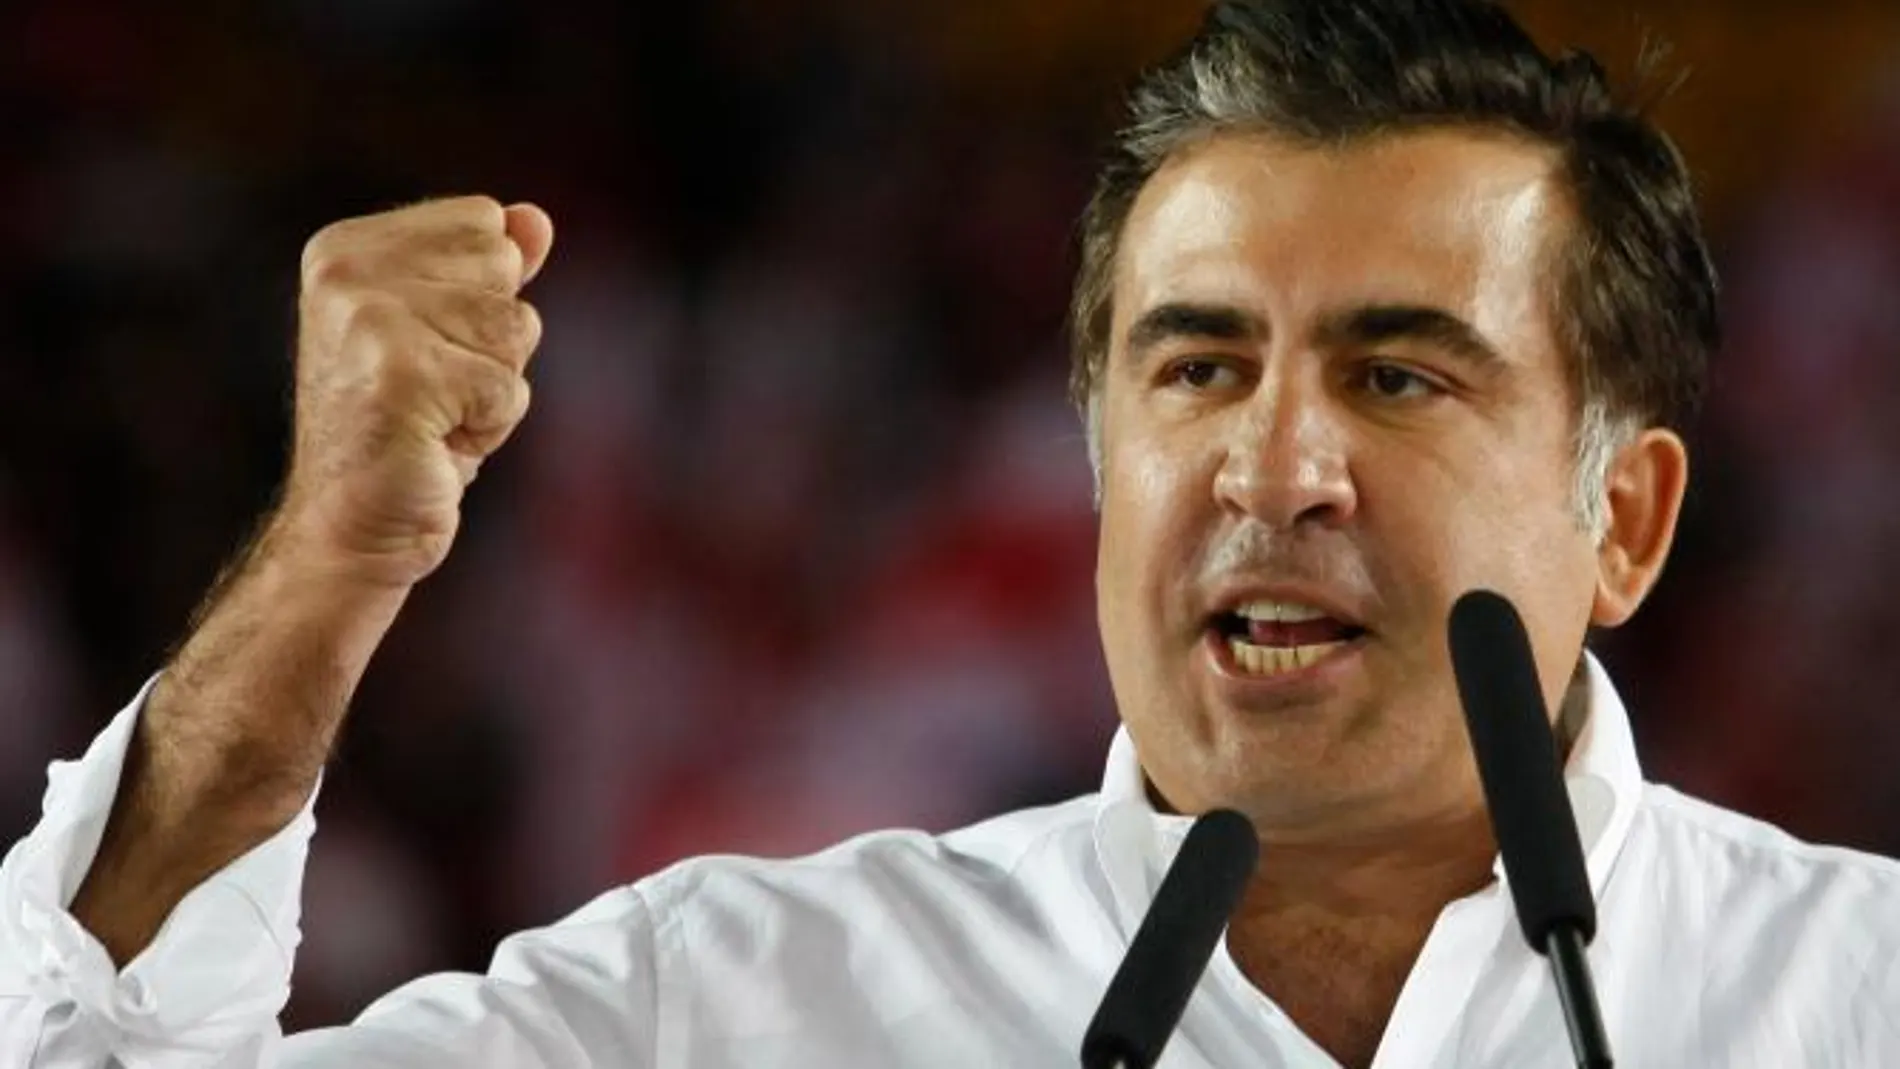 Saakashvili reconoce la victoria opositora en las legislativas de Georgia